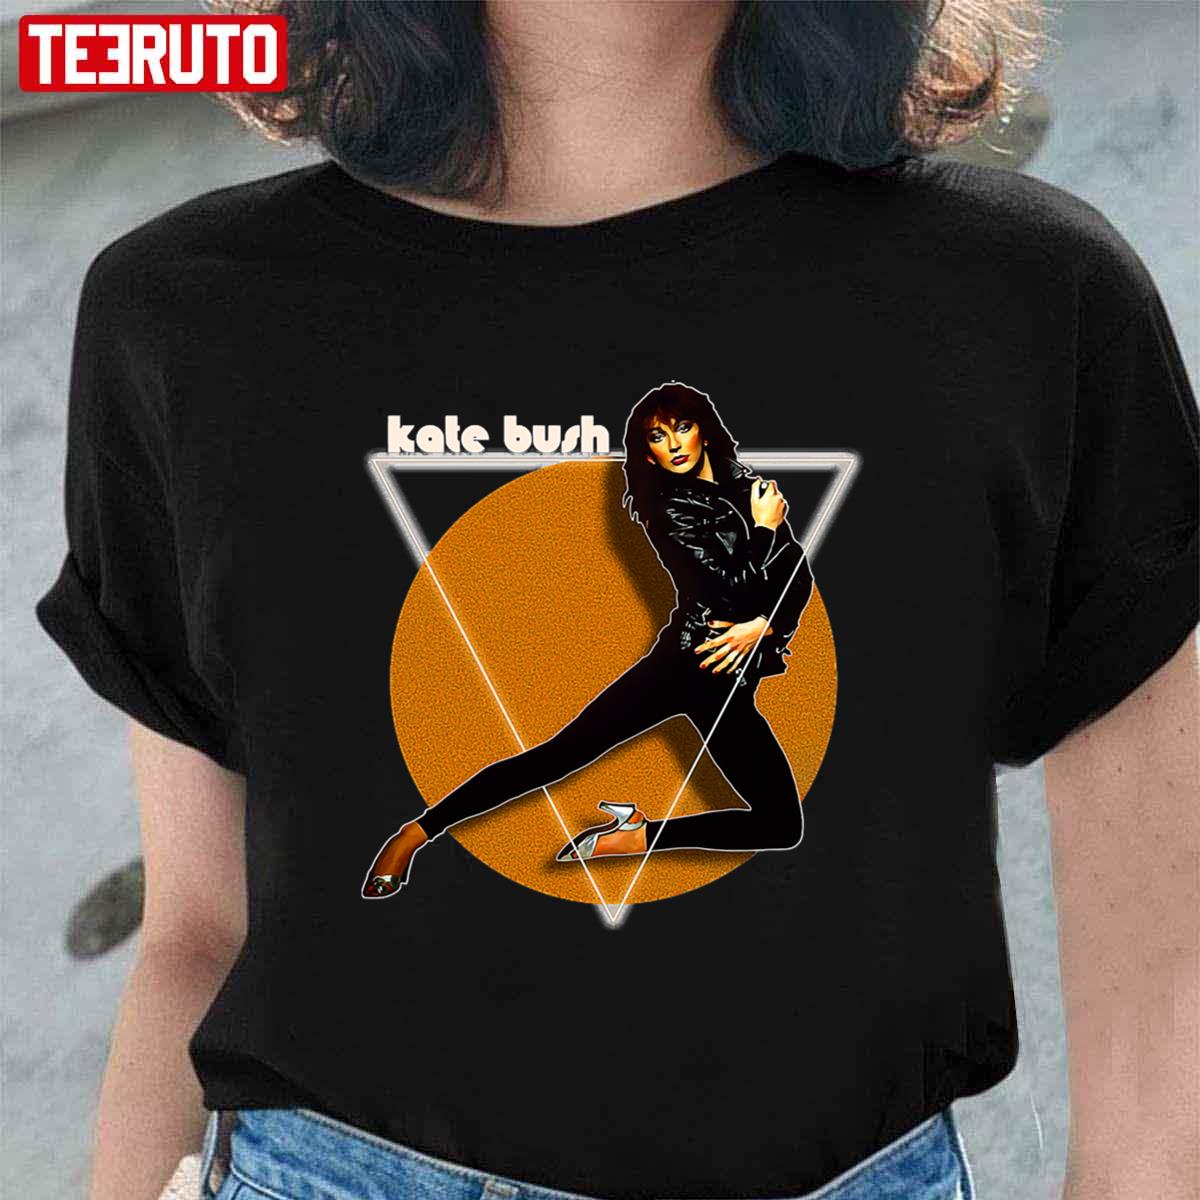 Kate Bush Unisex T-Shirt